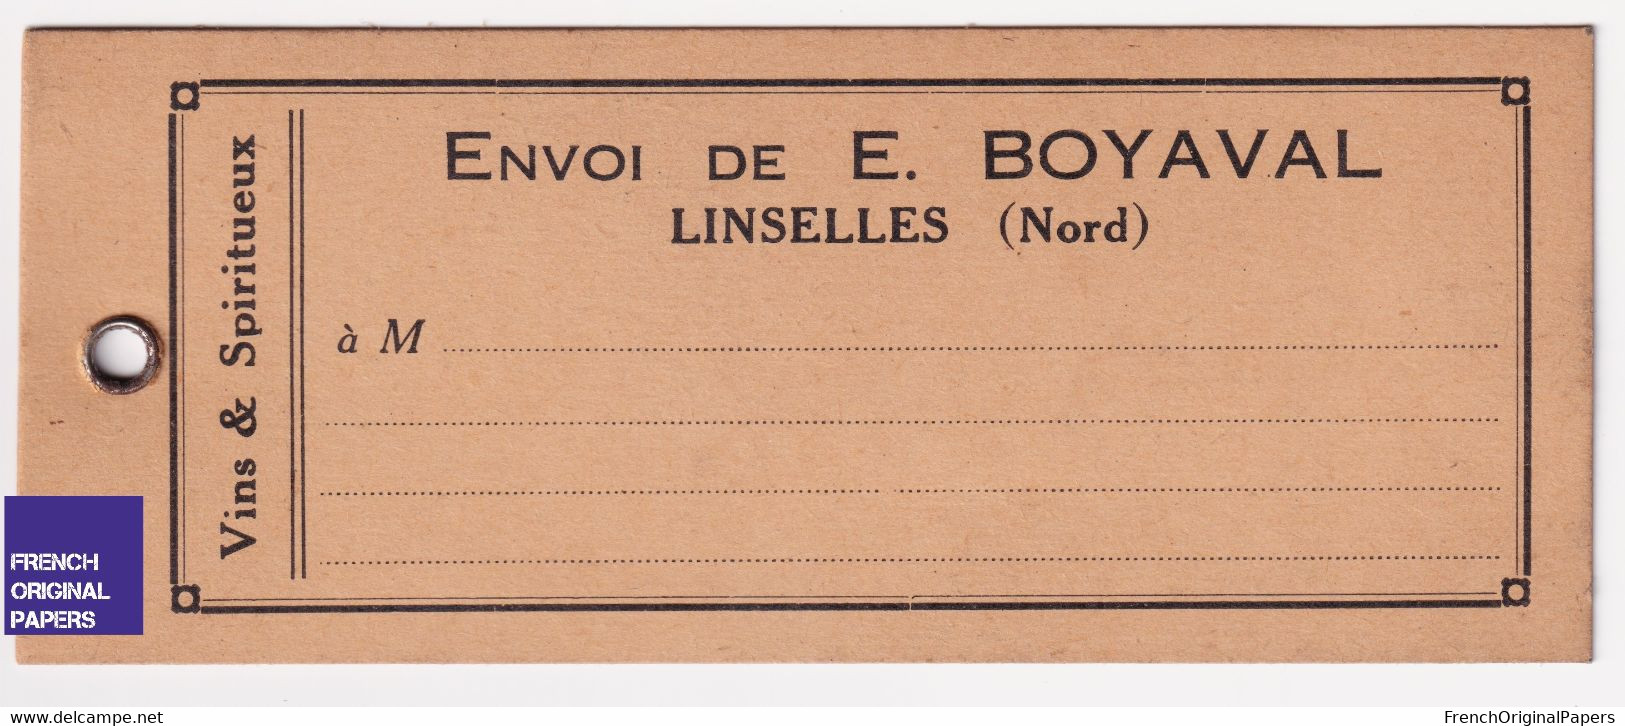 LOT DE 3 - Rare étiquette Livraison - Linselles Nord Vins Et Spiritueux Boyaval 1920s Vin œnologie Commerce  A63-30 - Publicidad